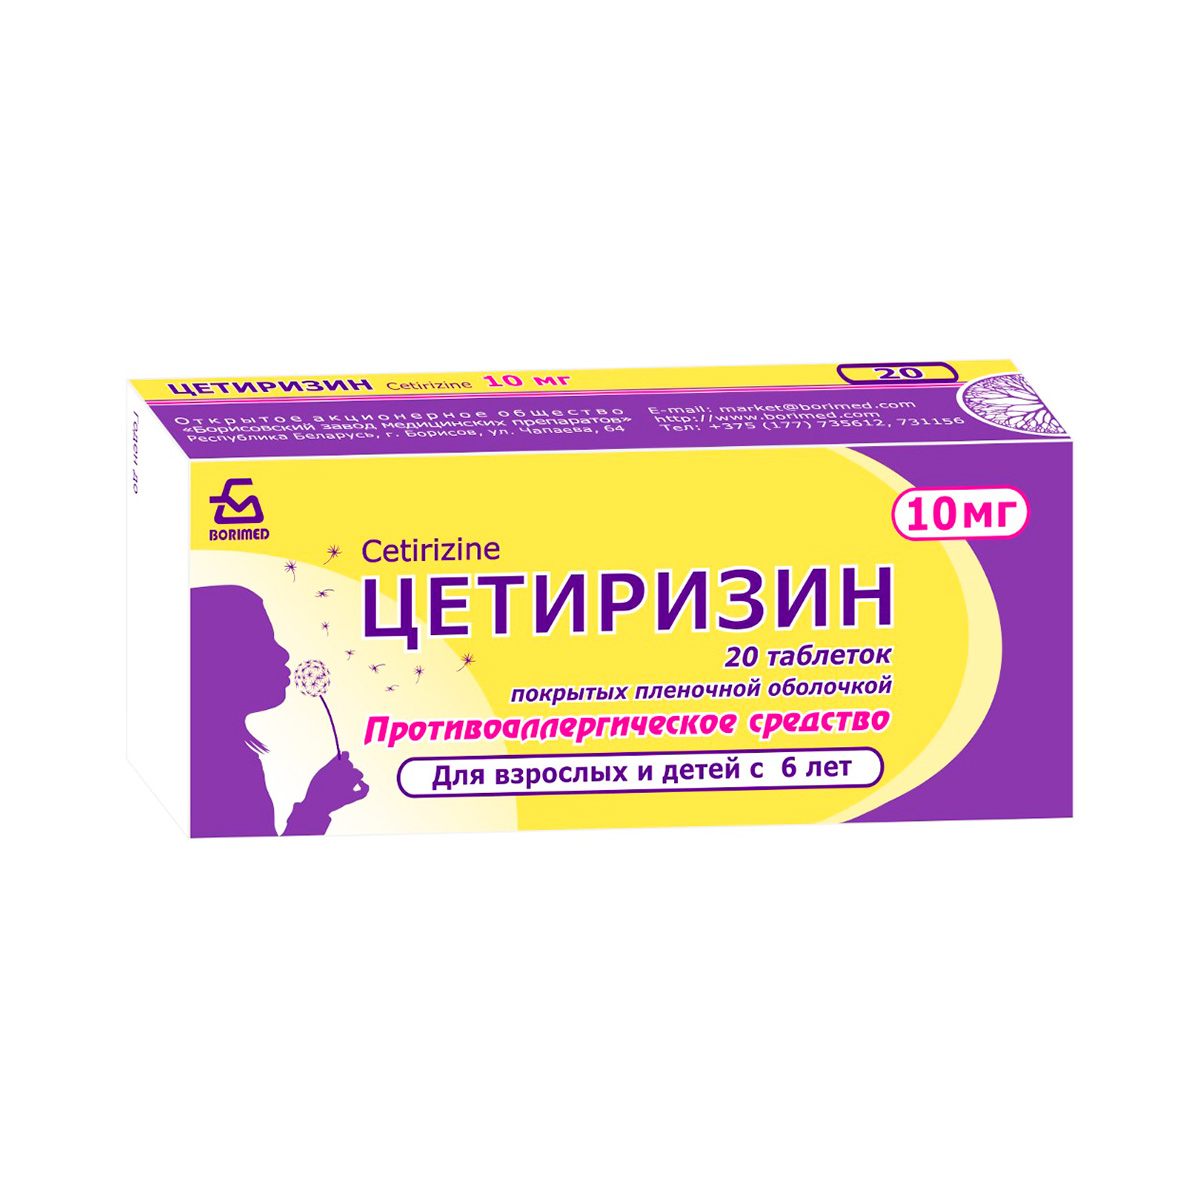 Цетиризин 10 мг таблетки покрытые пленочной оболочкой 20 шт